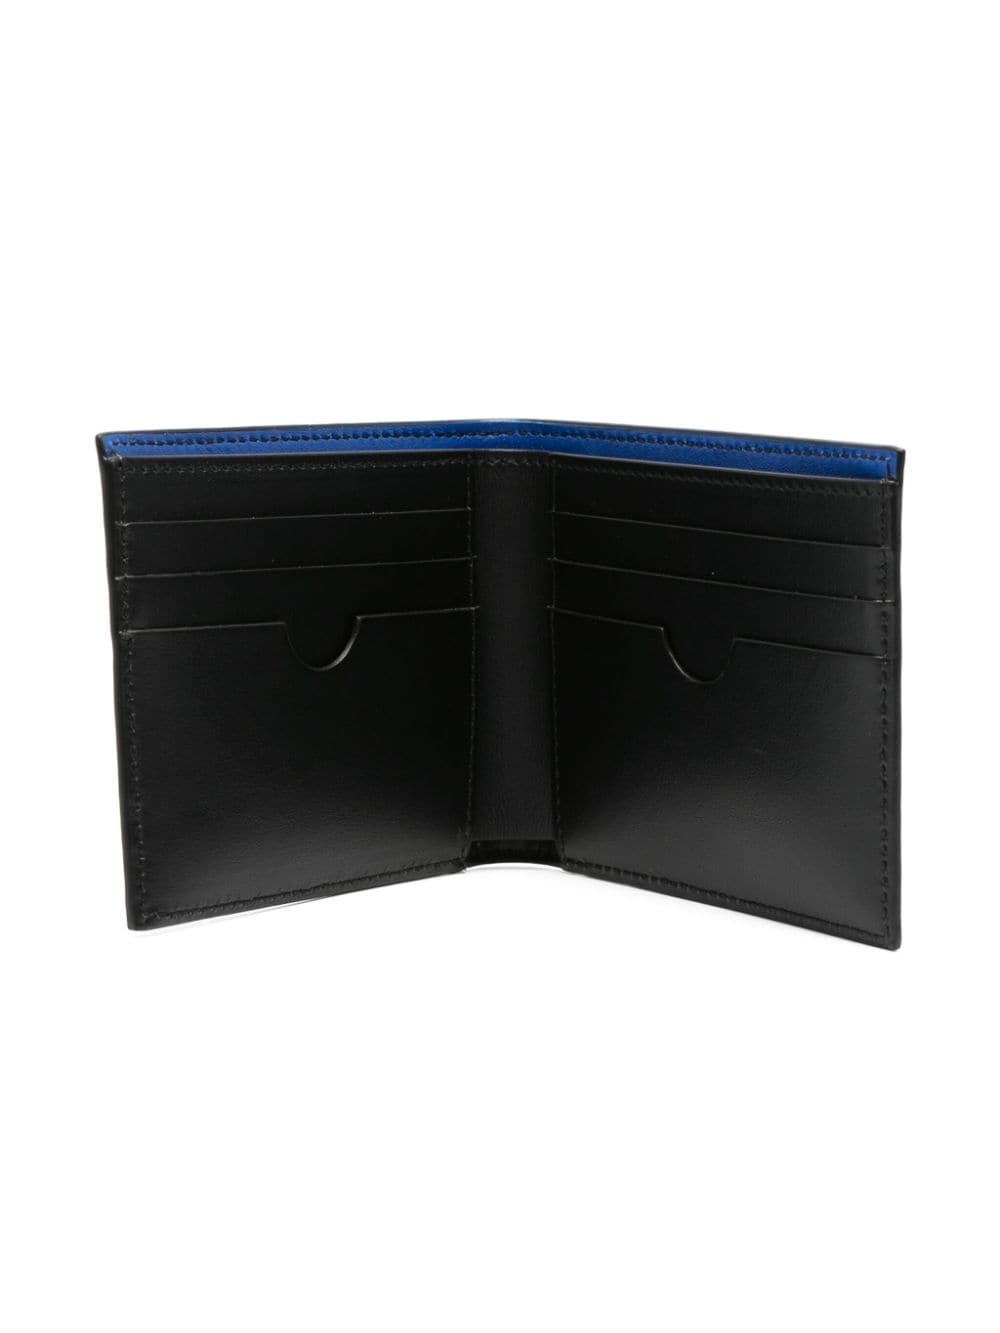 Arrows-motif leather wallet - 3